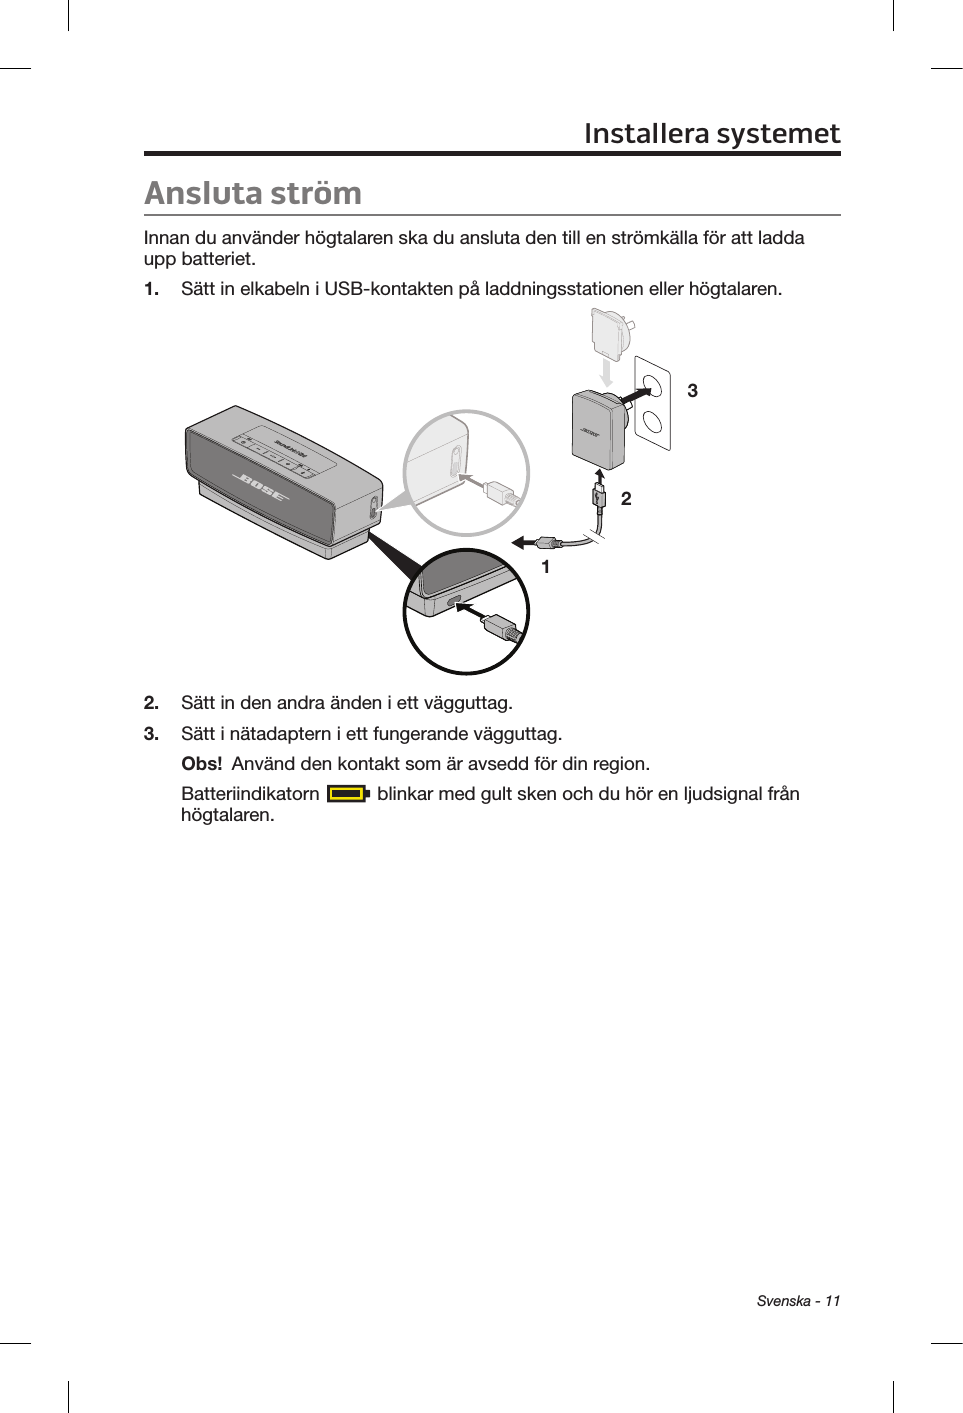 Svenska - 11Ansluta strömInnan du använder högtalaren ska du ansluta den till en strömkälla för att ladda upp batteriet.1.  Sätt in elkabeln i USB-kontakten på laddningsstationen eller högtalaren.1 232.  Sätt in den andra änden i ett vägguttag.3.  Sätt i nätadaptern i ett fungerande vägguttag.Obs!  Använd den kontakt som är avsedd för din region.Batteriindikatorn   blinkar med gult sken och du hör en ljudsignal från högtalaren.Installera systemet